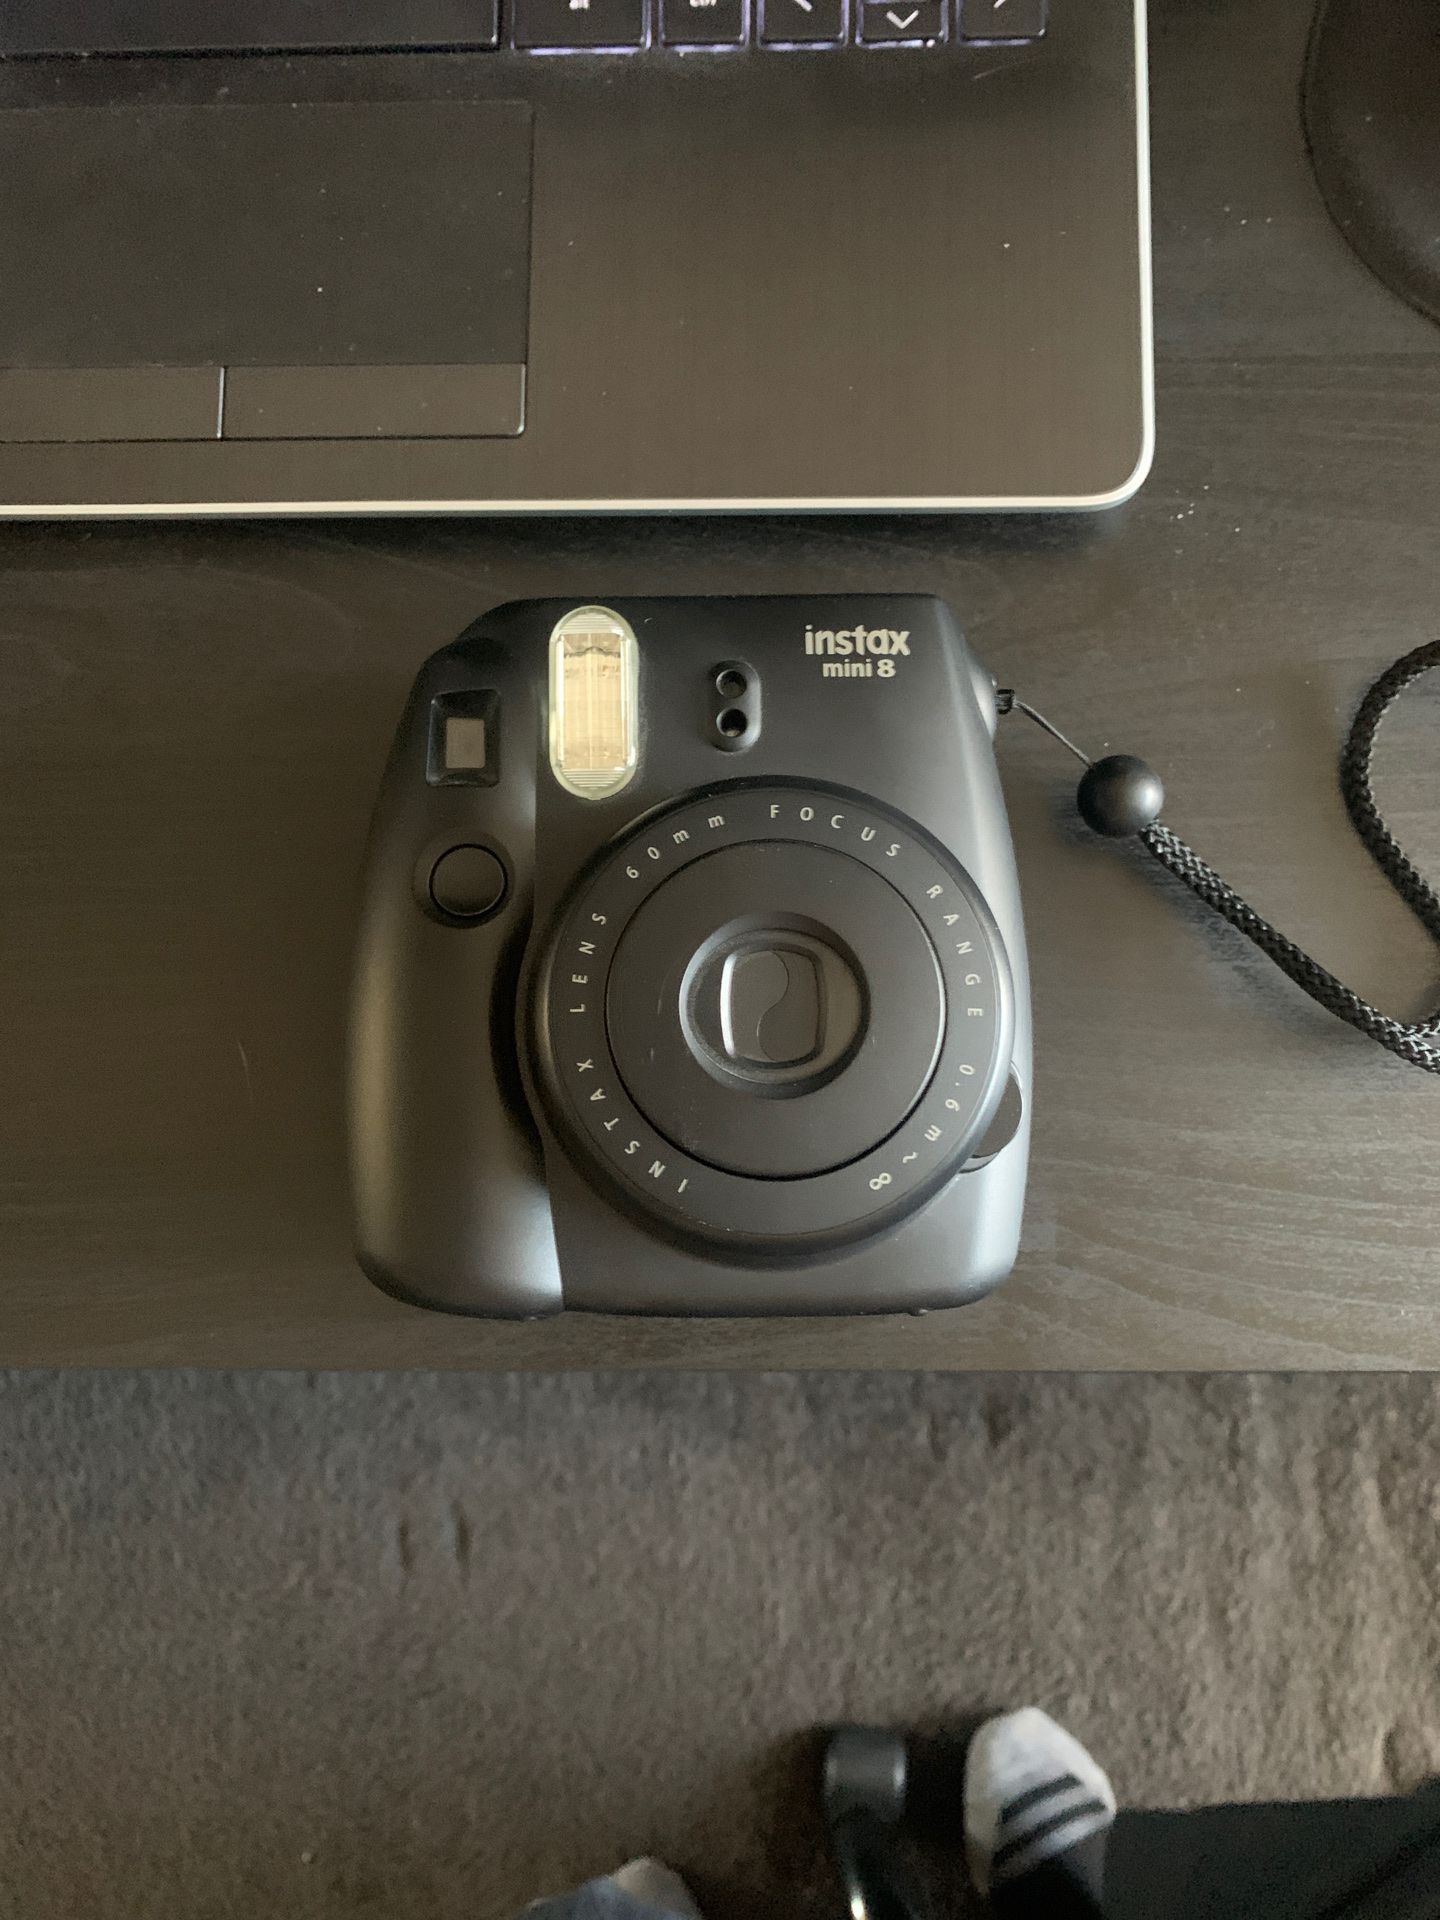 Fuji film instax mini 8 camera